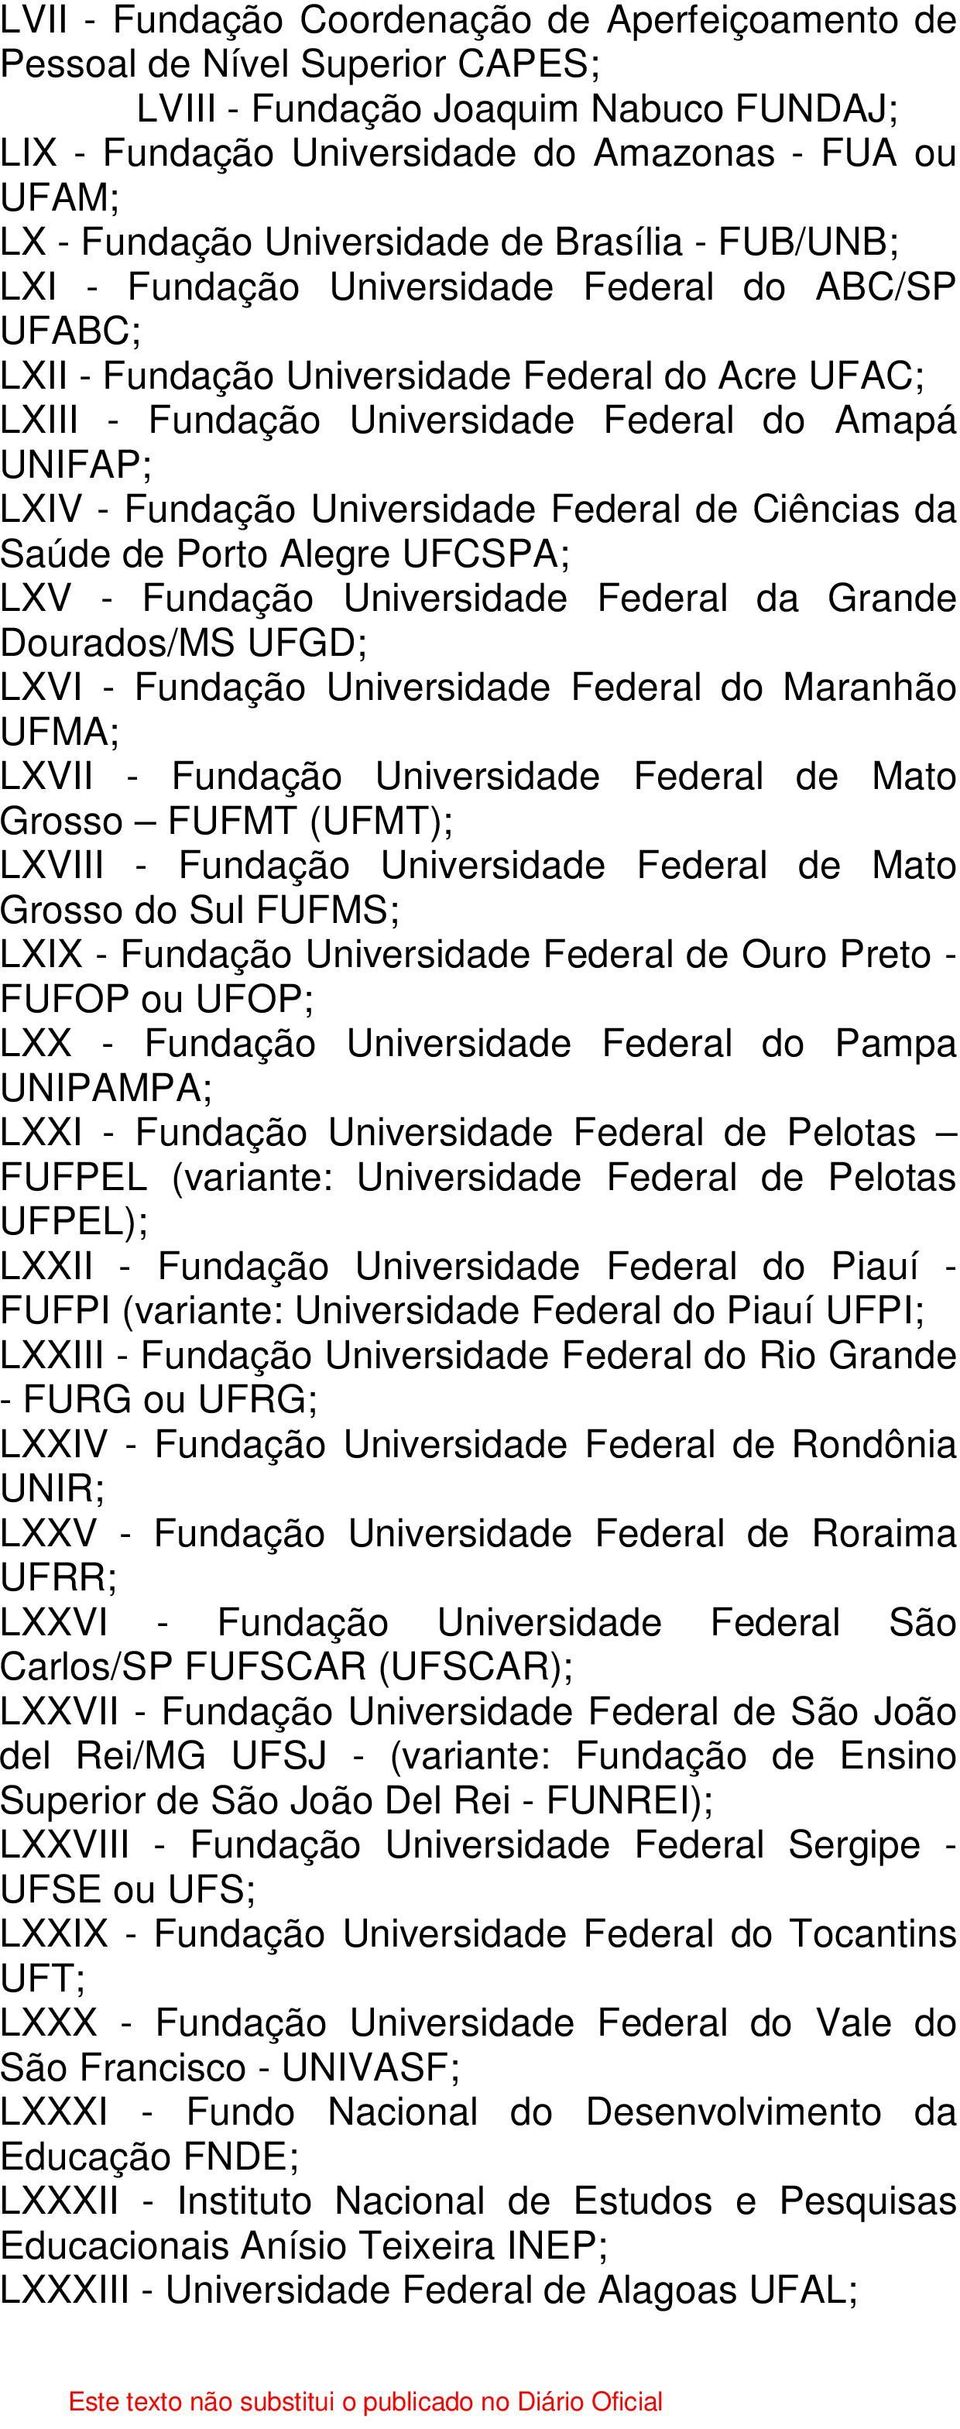 - Fundação Universidade Federal de Ciências da Saúde de Porto Alegre UFCSPA; LXV - Fundação Universidade Federal da Grande Dourados/MS UFGD; LXVI - Fundação Universidade Federal do Maranhão UFMA;